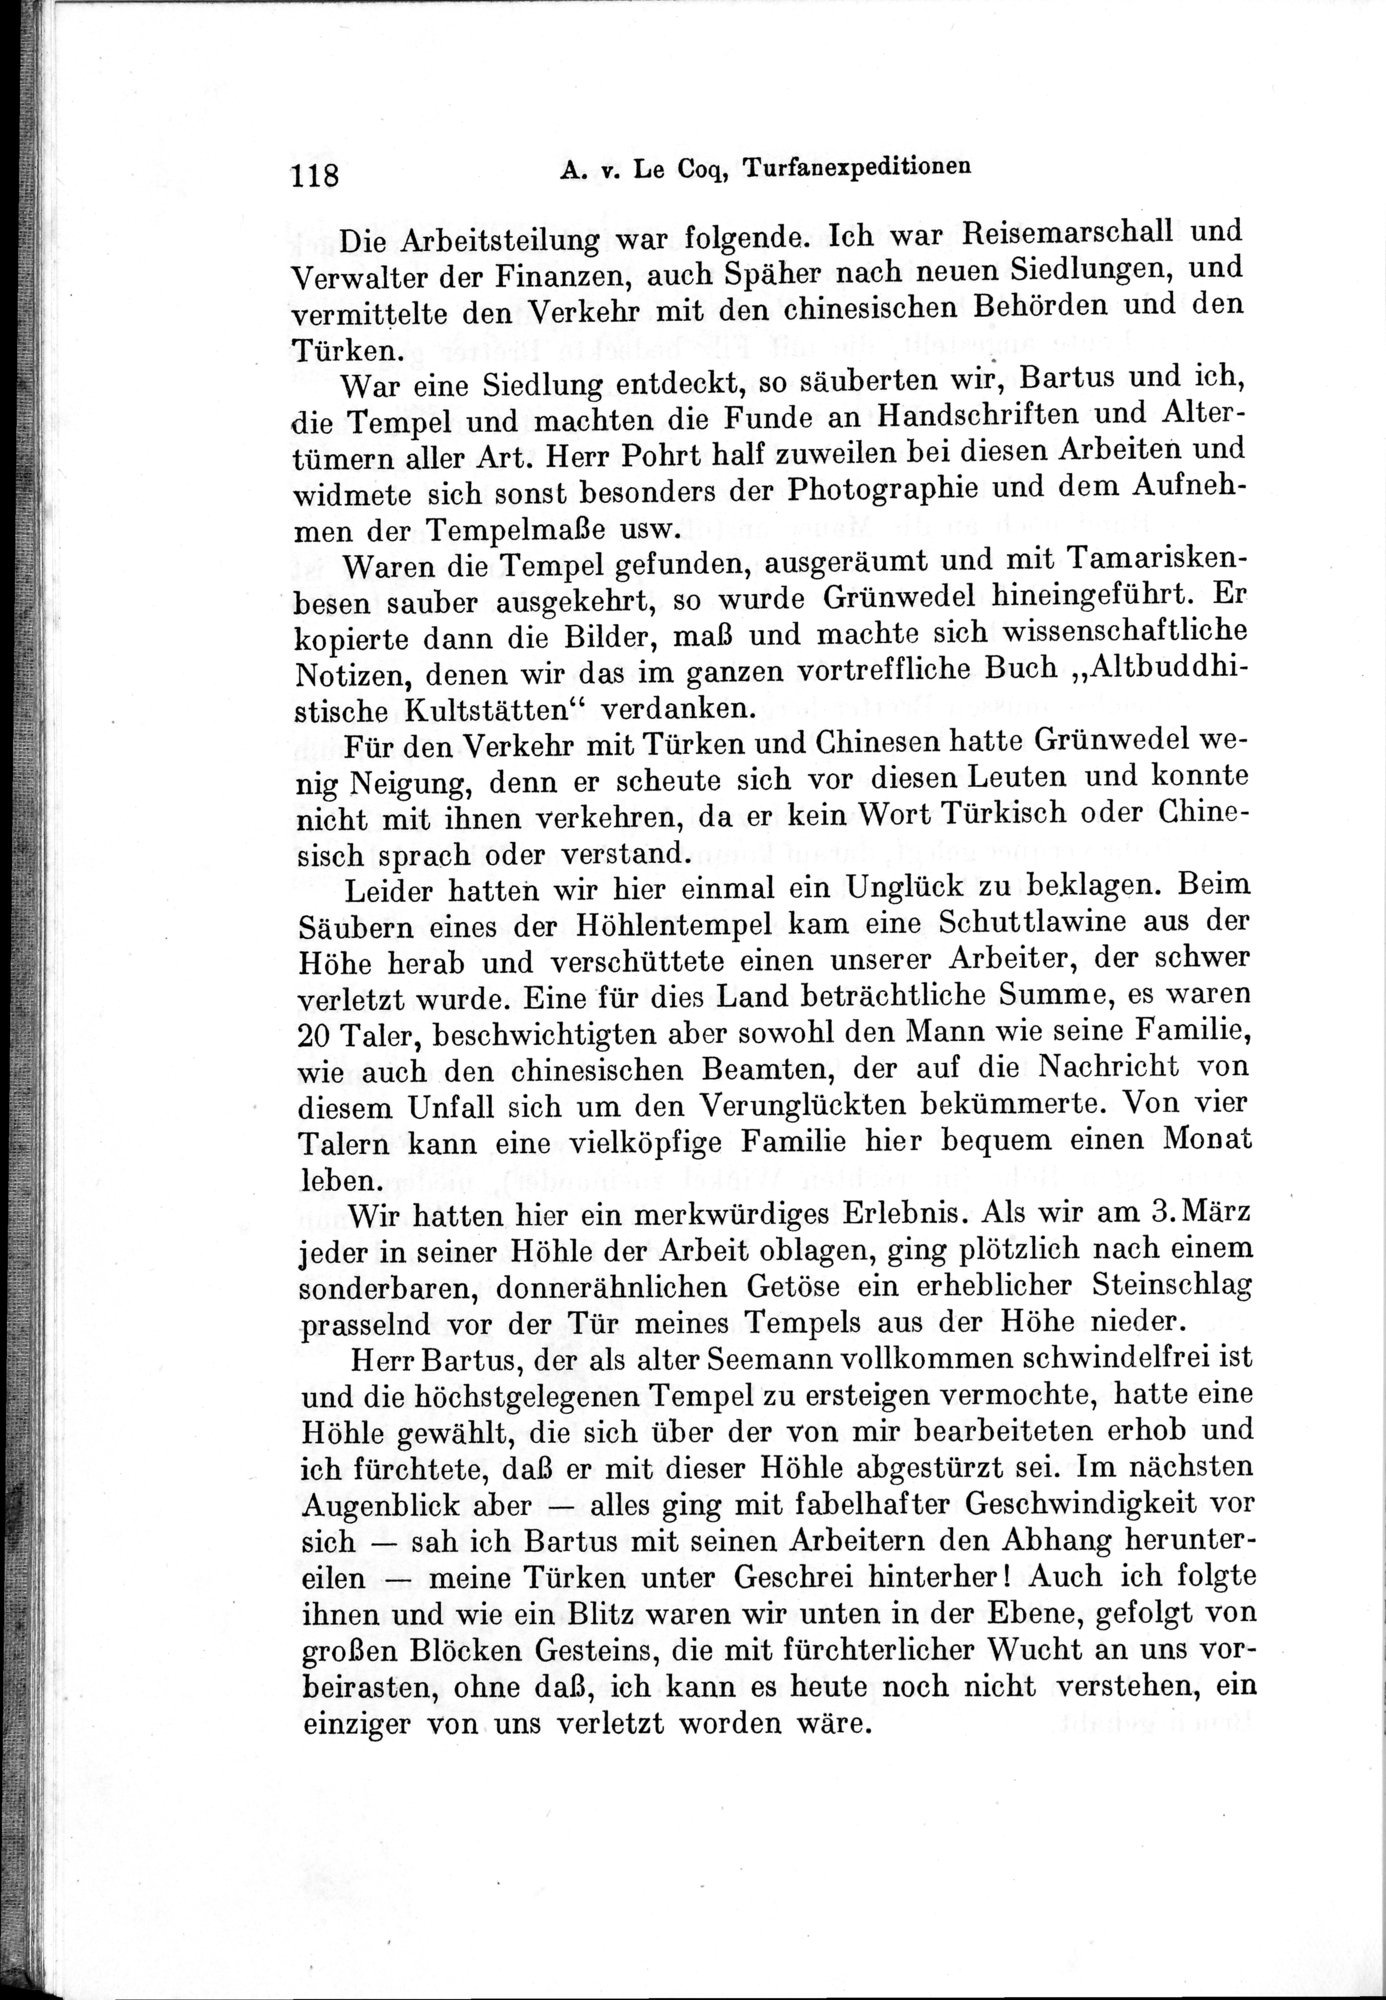 Auf Hellas Spuren in Ostturkistan : vol.1 / Page 170 (Grayscale High Resolution Image)